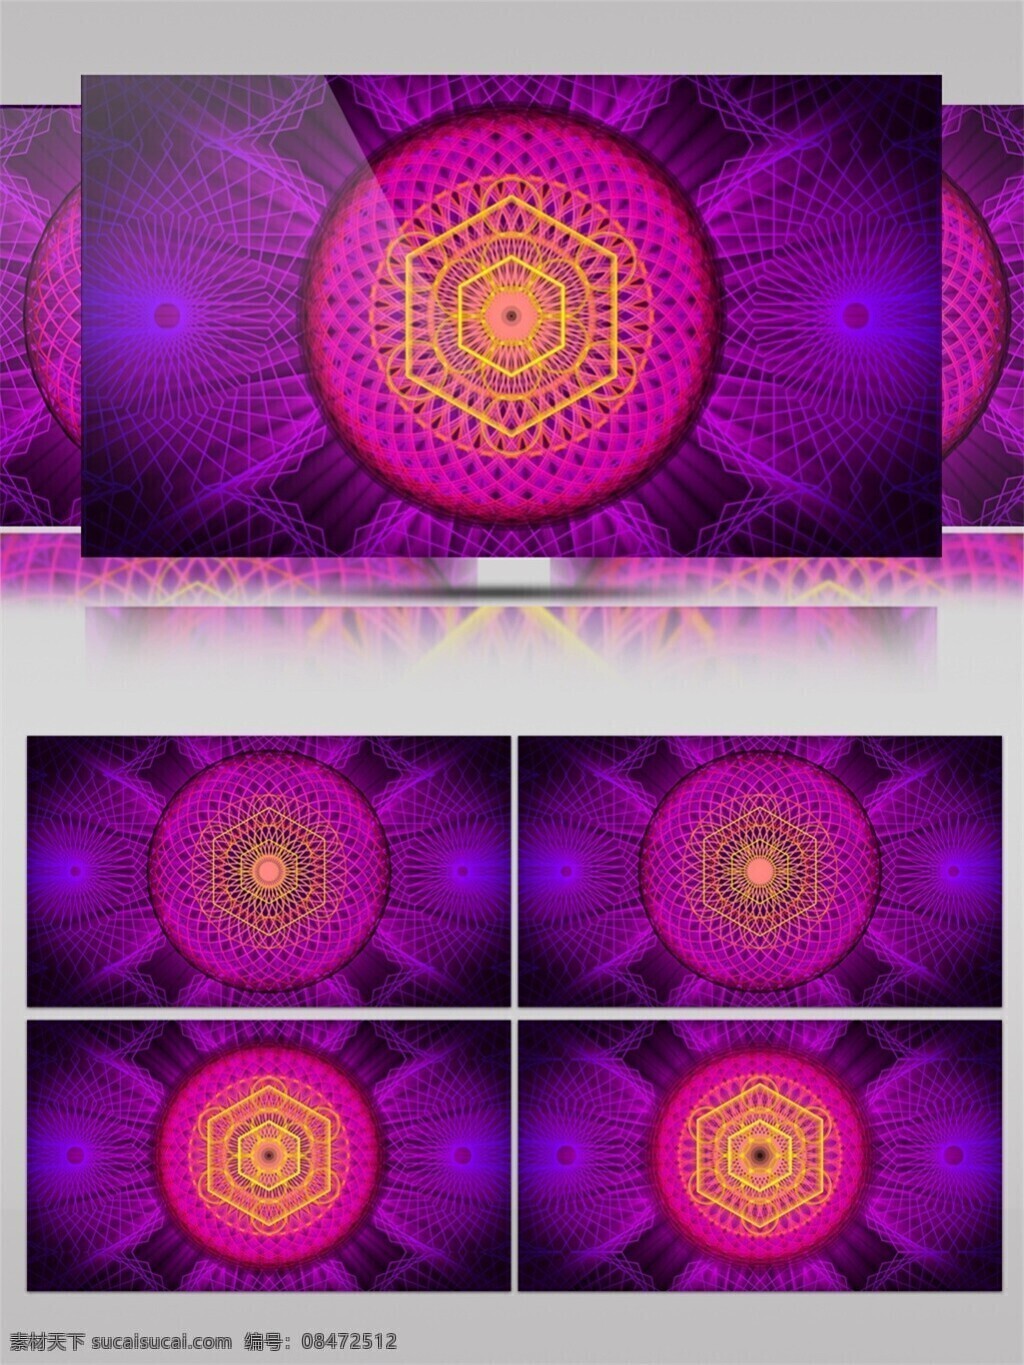 光斑散射 光束 激光 视觉享受 手机壁纸 紫色 动感 花蕾 舞台 视频